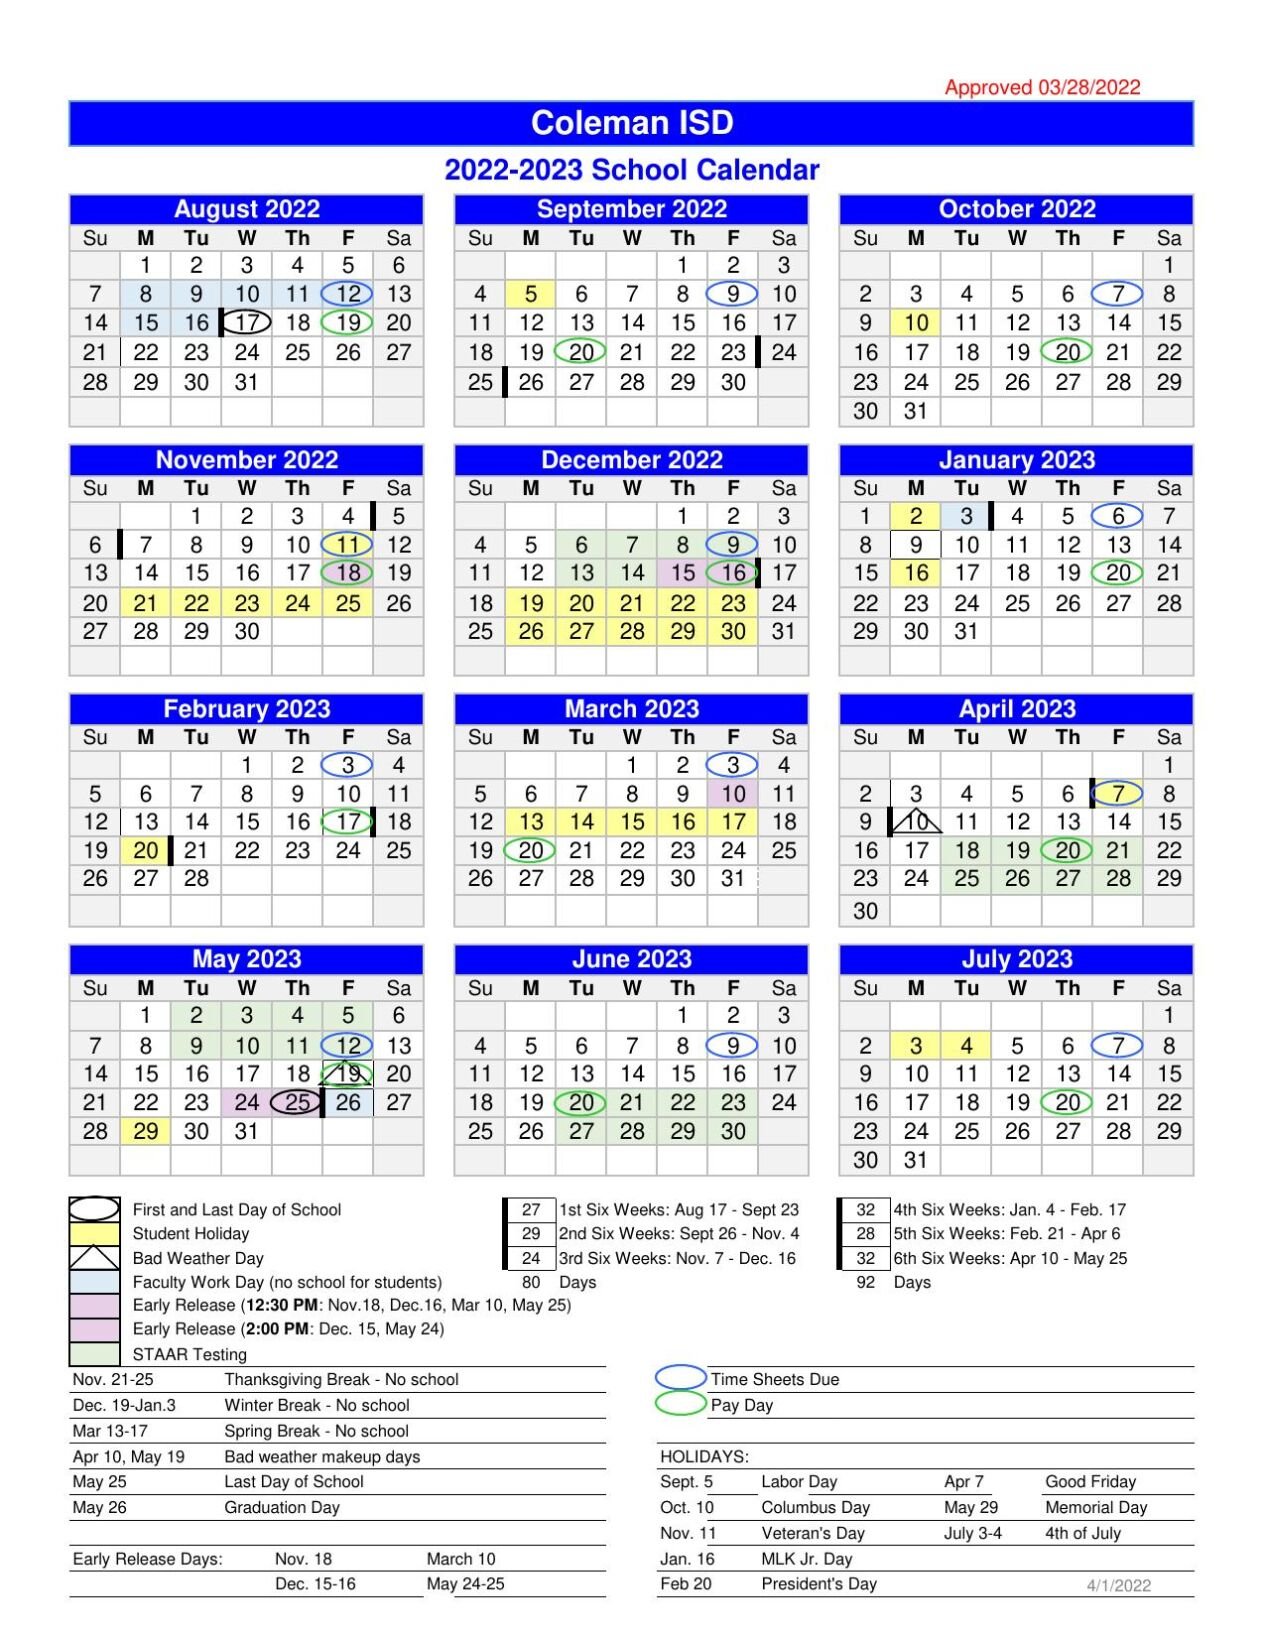 2022-2023-cisd-calendar-colemantoday